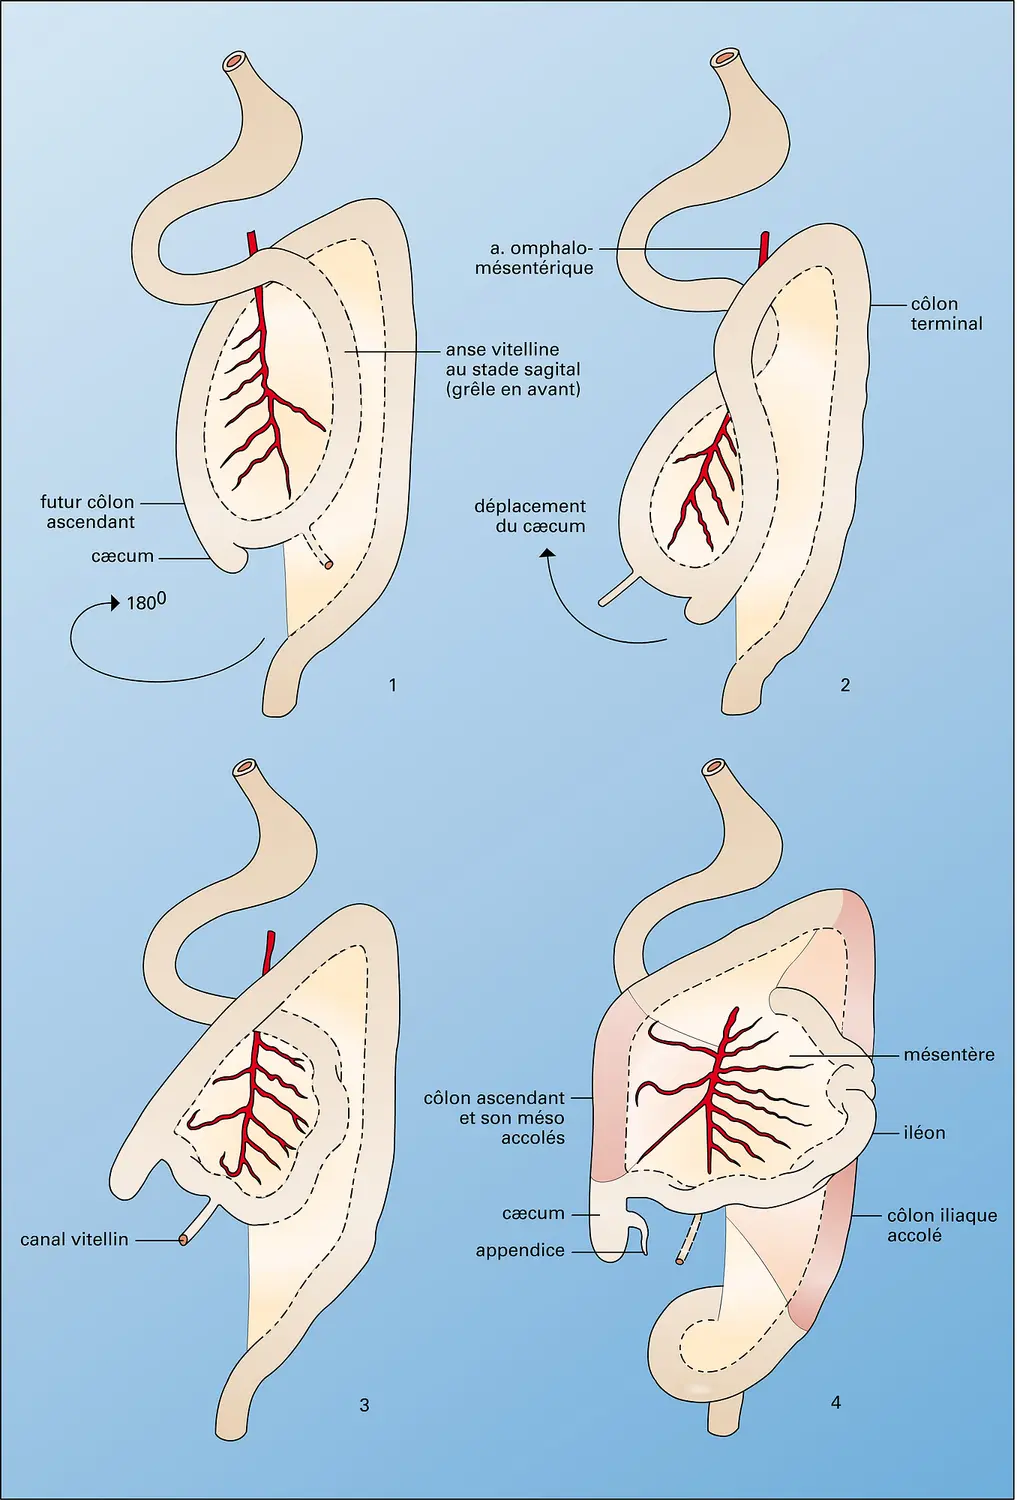 Evolution embryologique du tube digestif